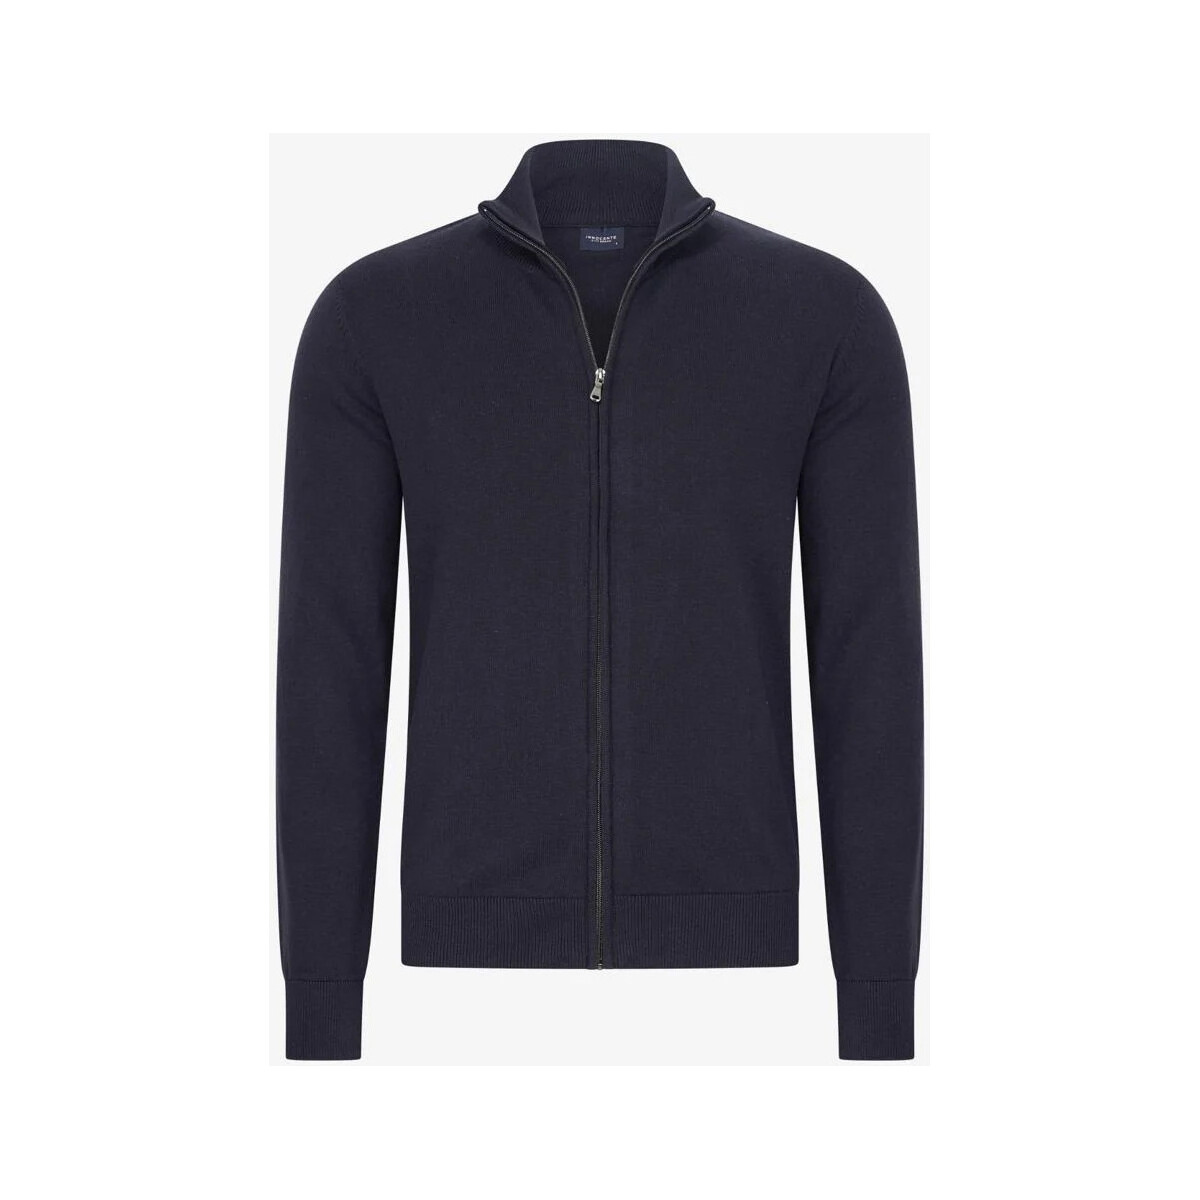 Textiel Dames Vesten / Cardigans Innocente sweater vest navy Blauw